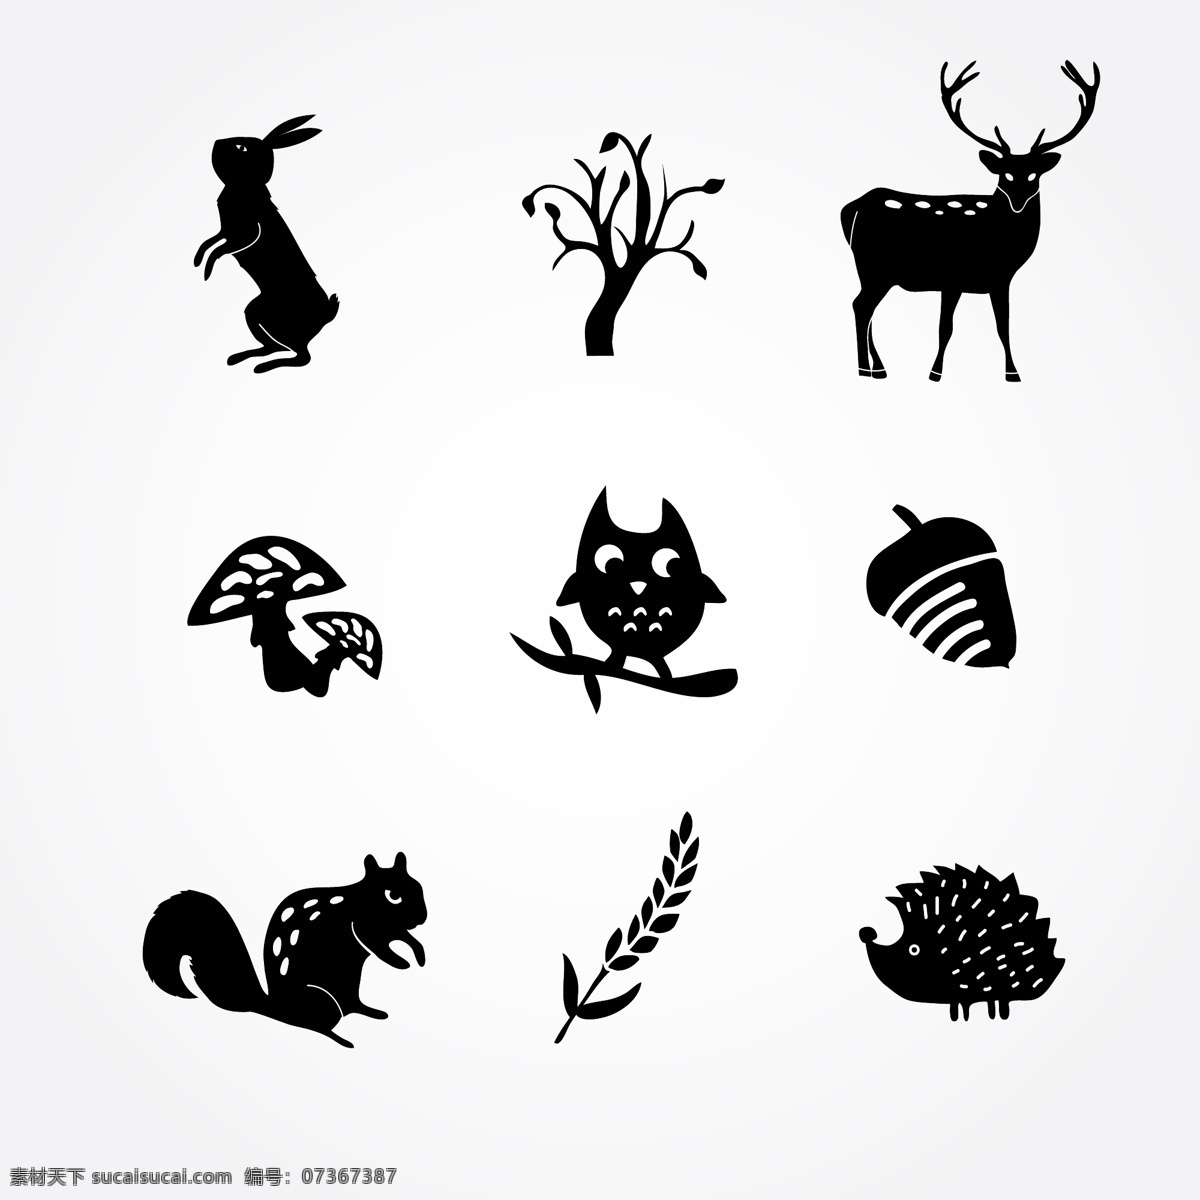 单色 动植物 图标 矢量 动物图标 植物图标 兔子 猫头鹰 松鼠 蘑菇 榛子 刺猬 森林动物 白色